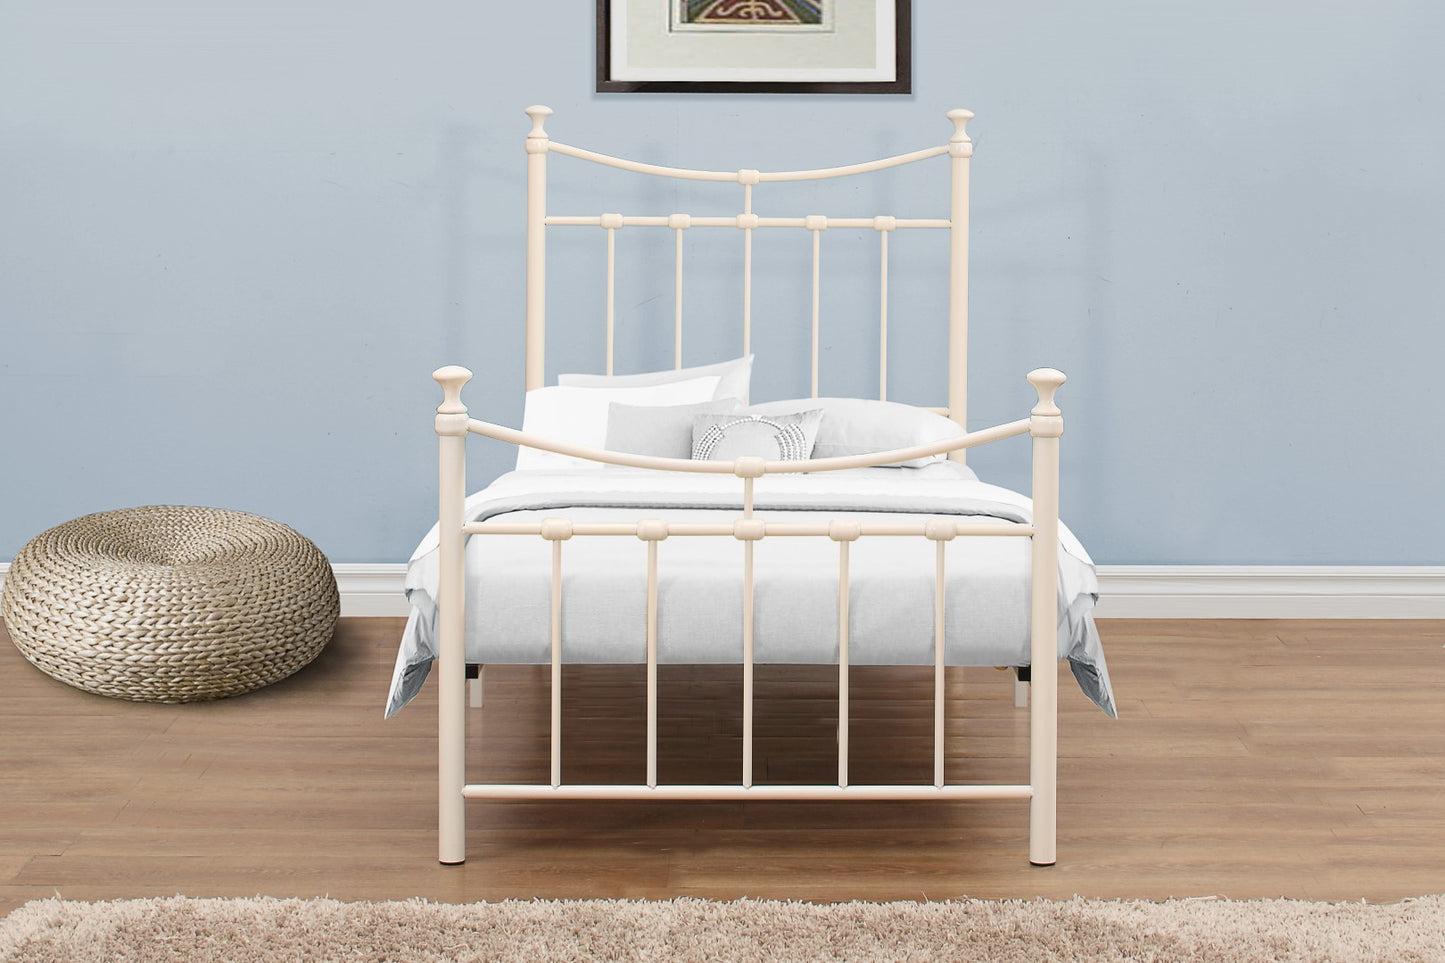 Birlea Emily 3ft Single White Metal Bed Frame